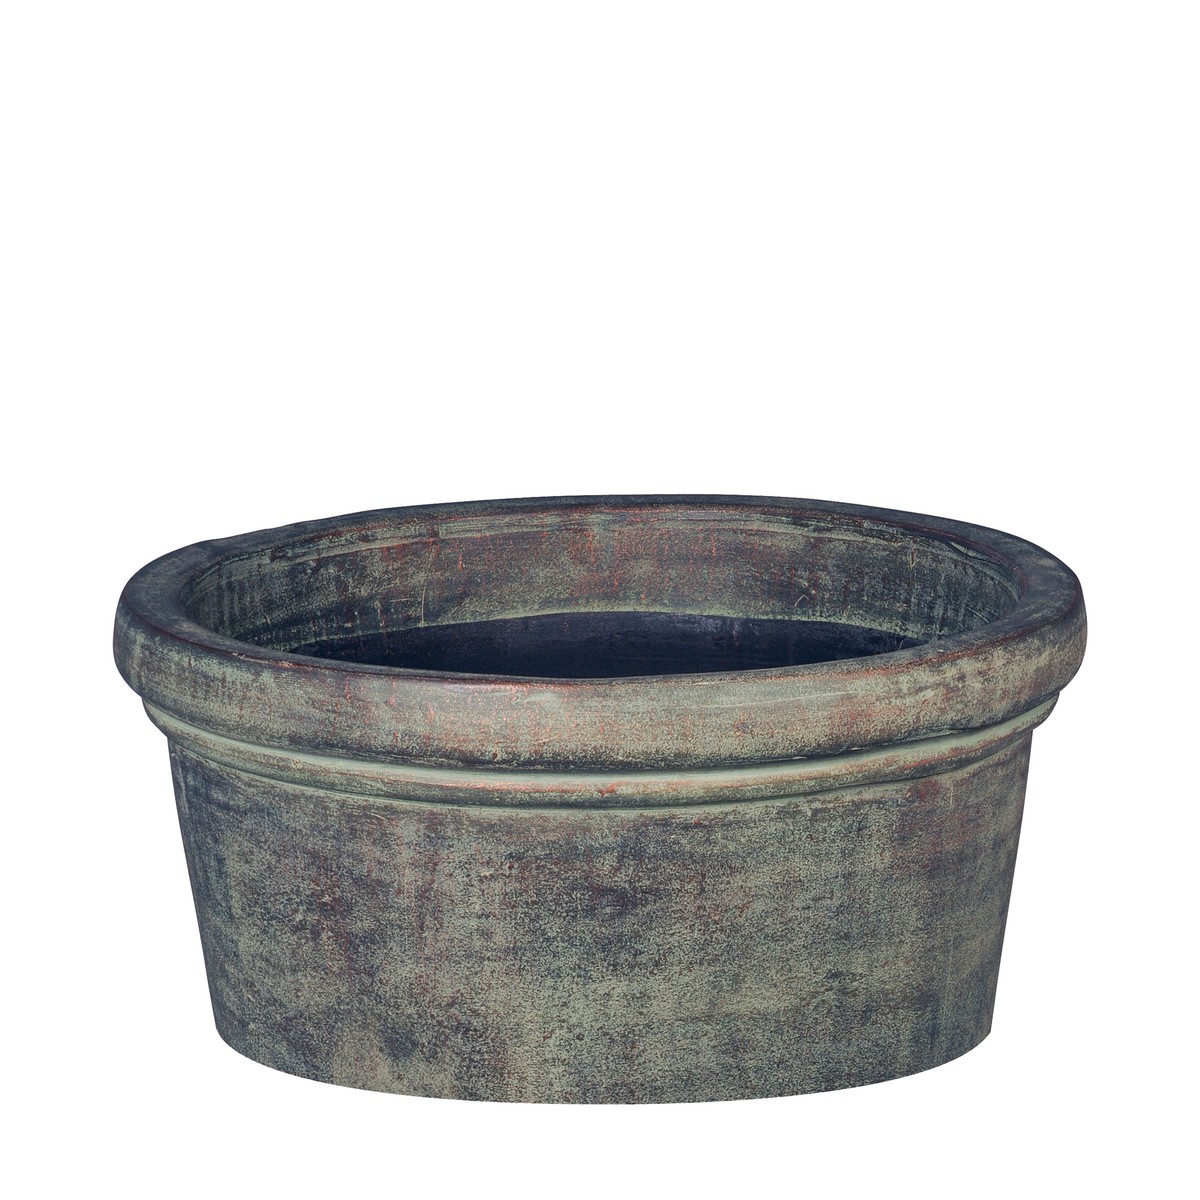   Bowl Liso Antic Ceramic 40x15cm Verde  40x15cm